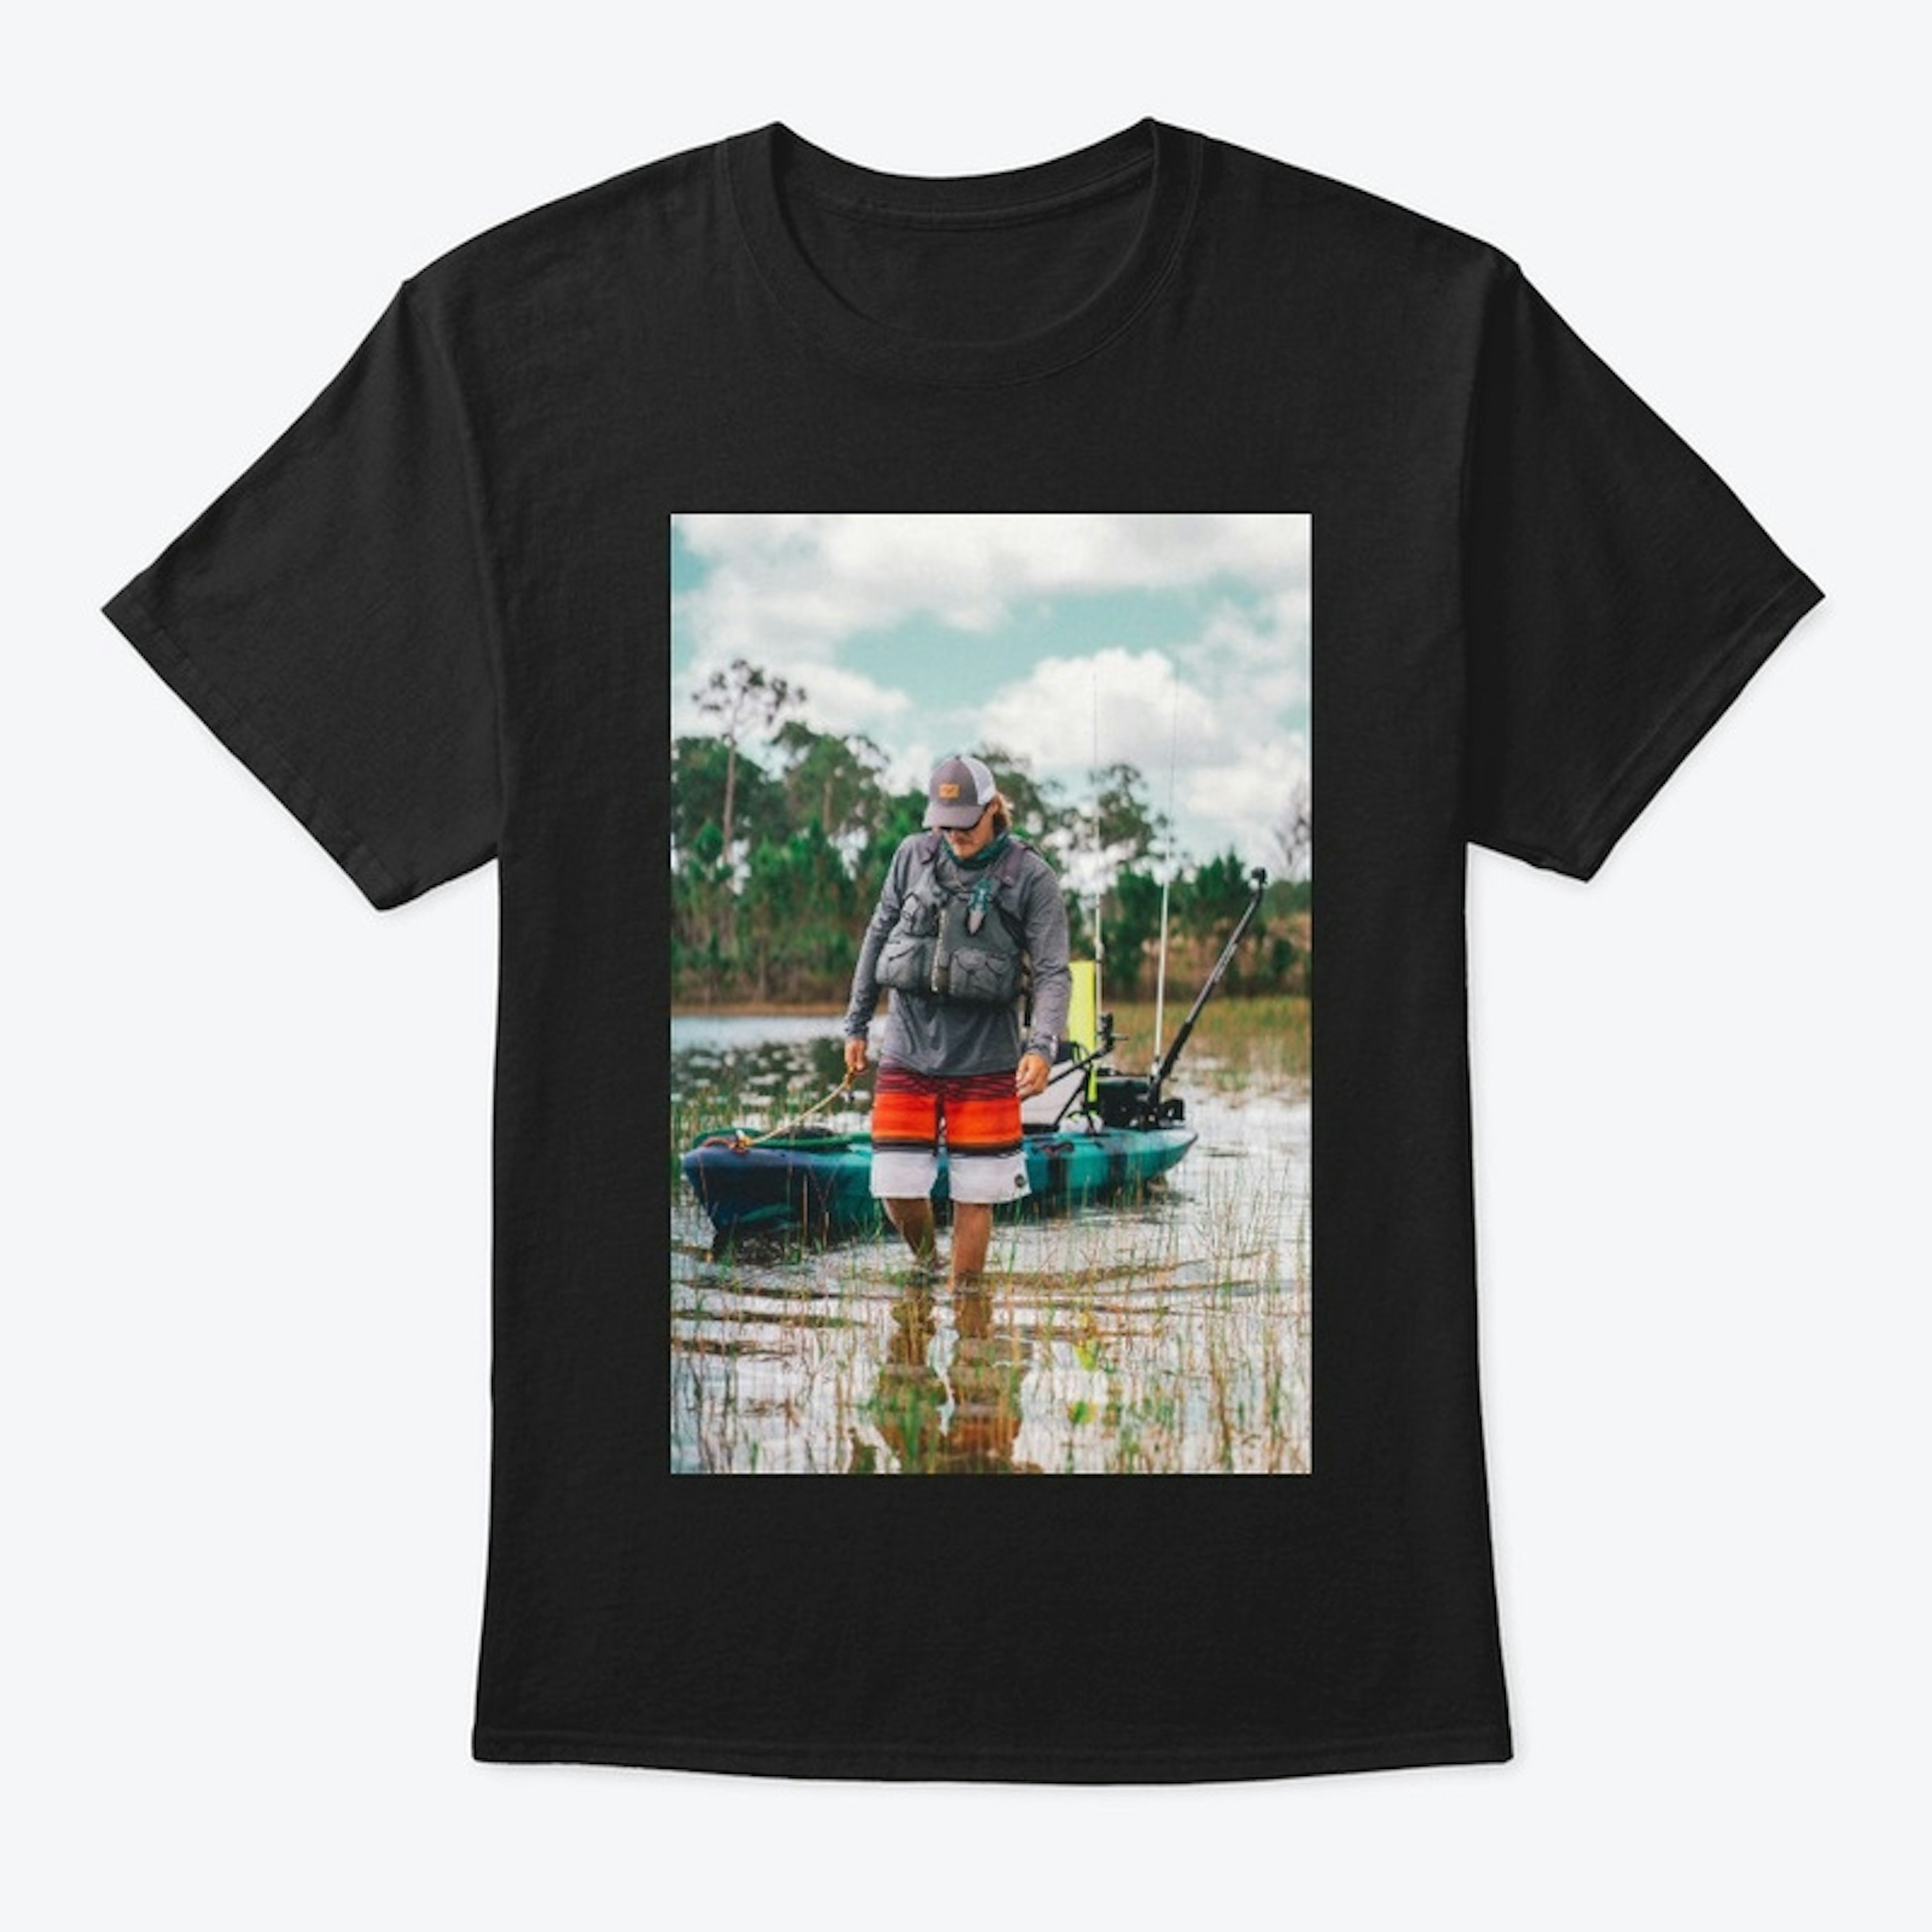 Kayaking T-Shirt